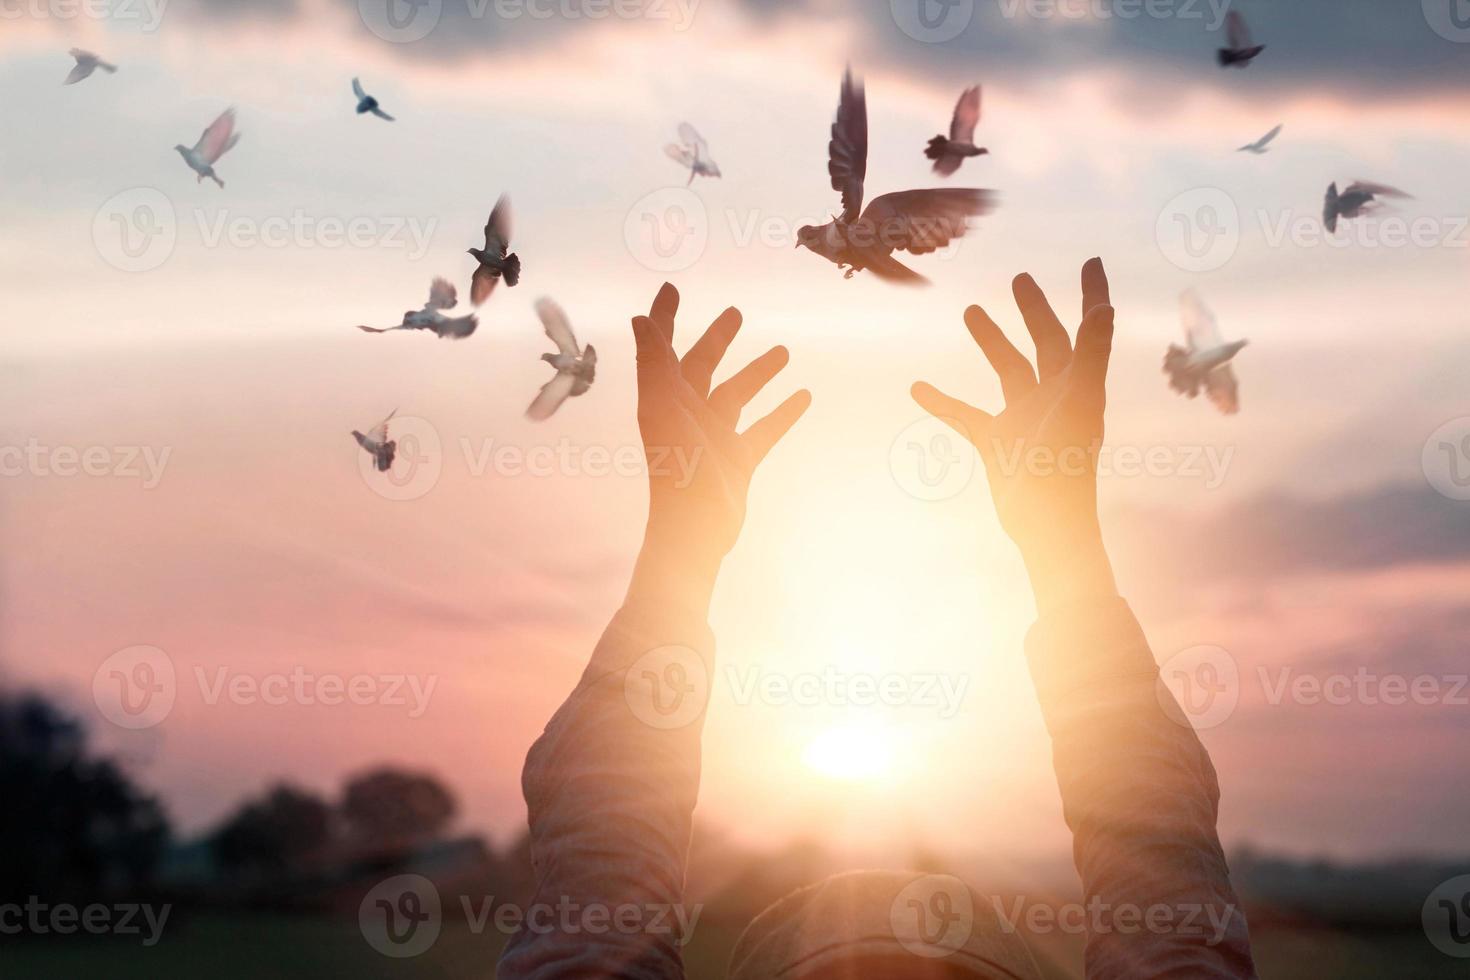 mulher rezando e pássaro livre curtindo a natureza no fundo do pôr do sol, conceito de esperança foto